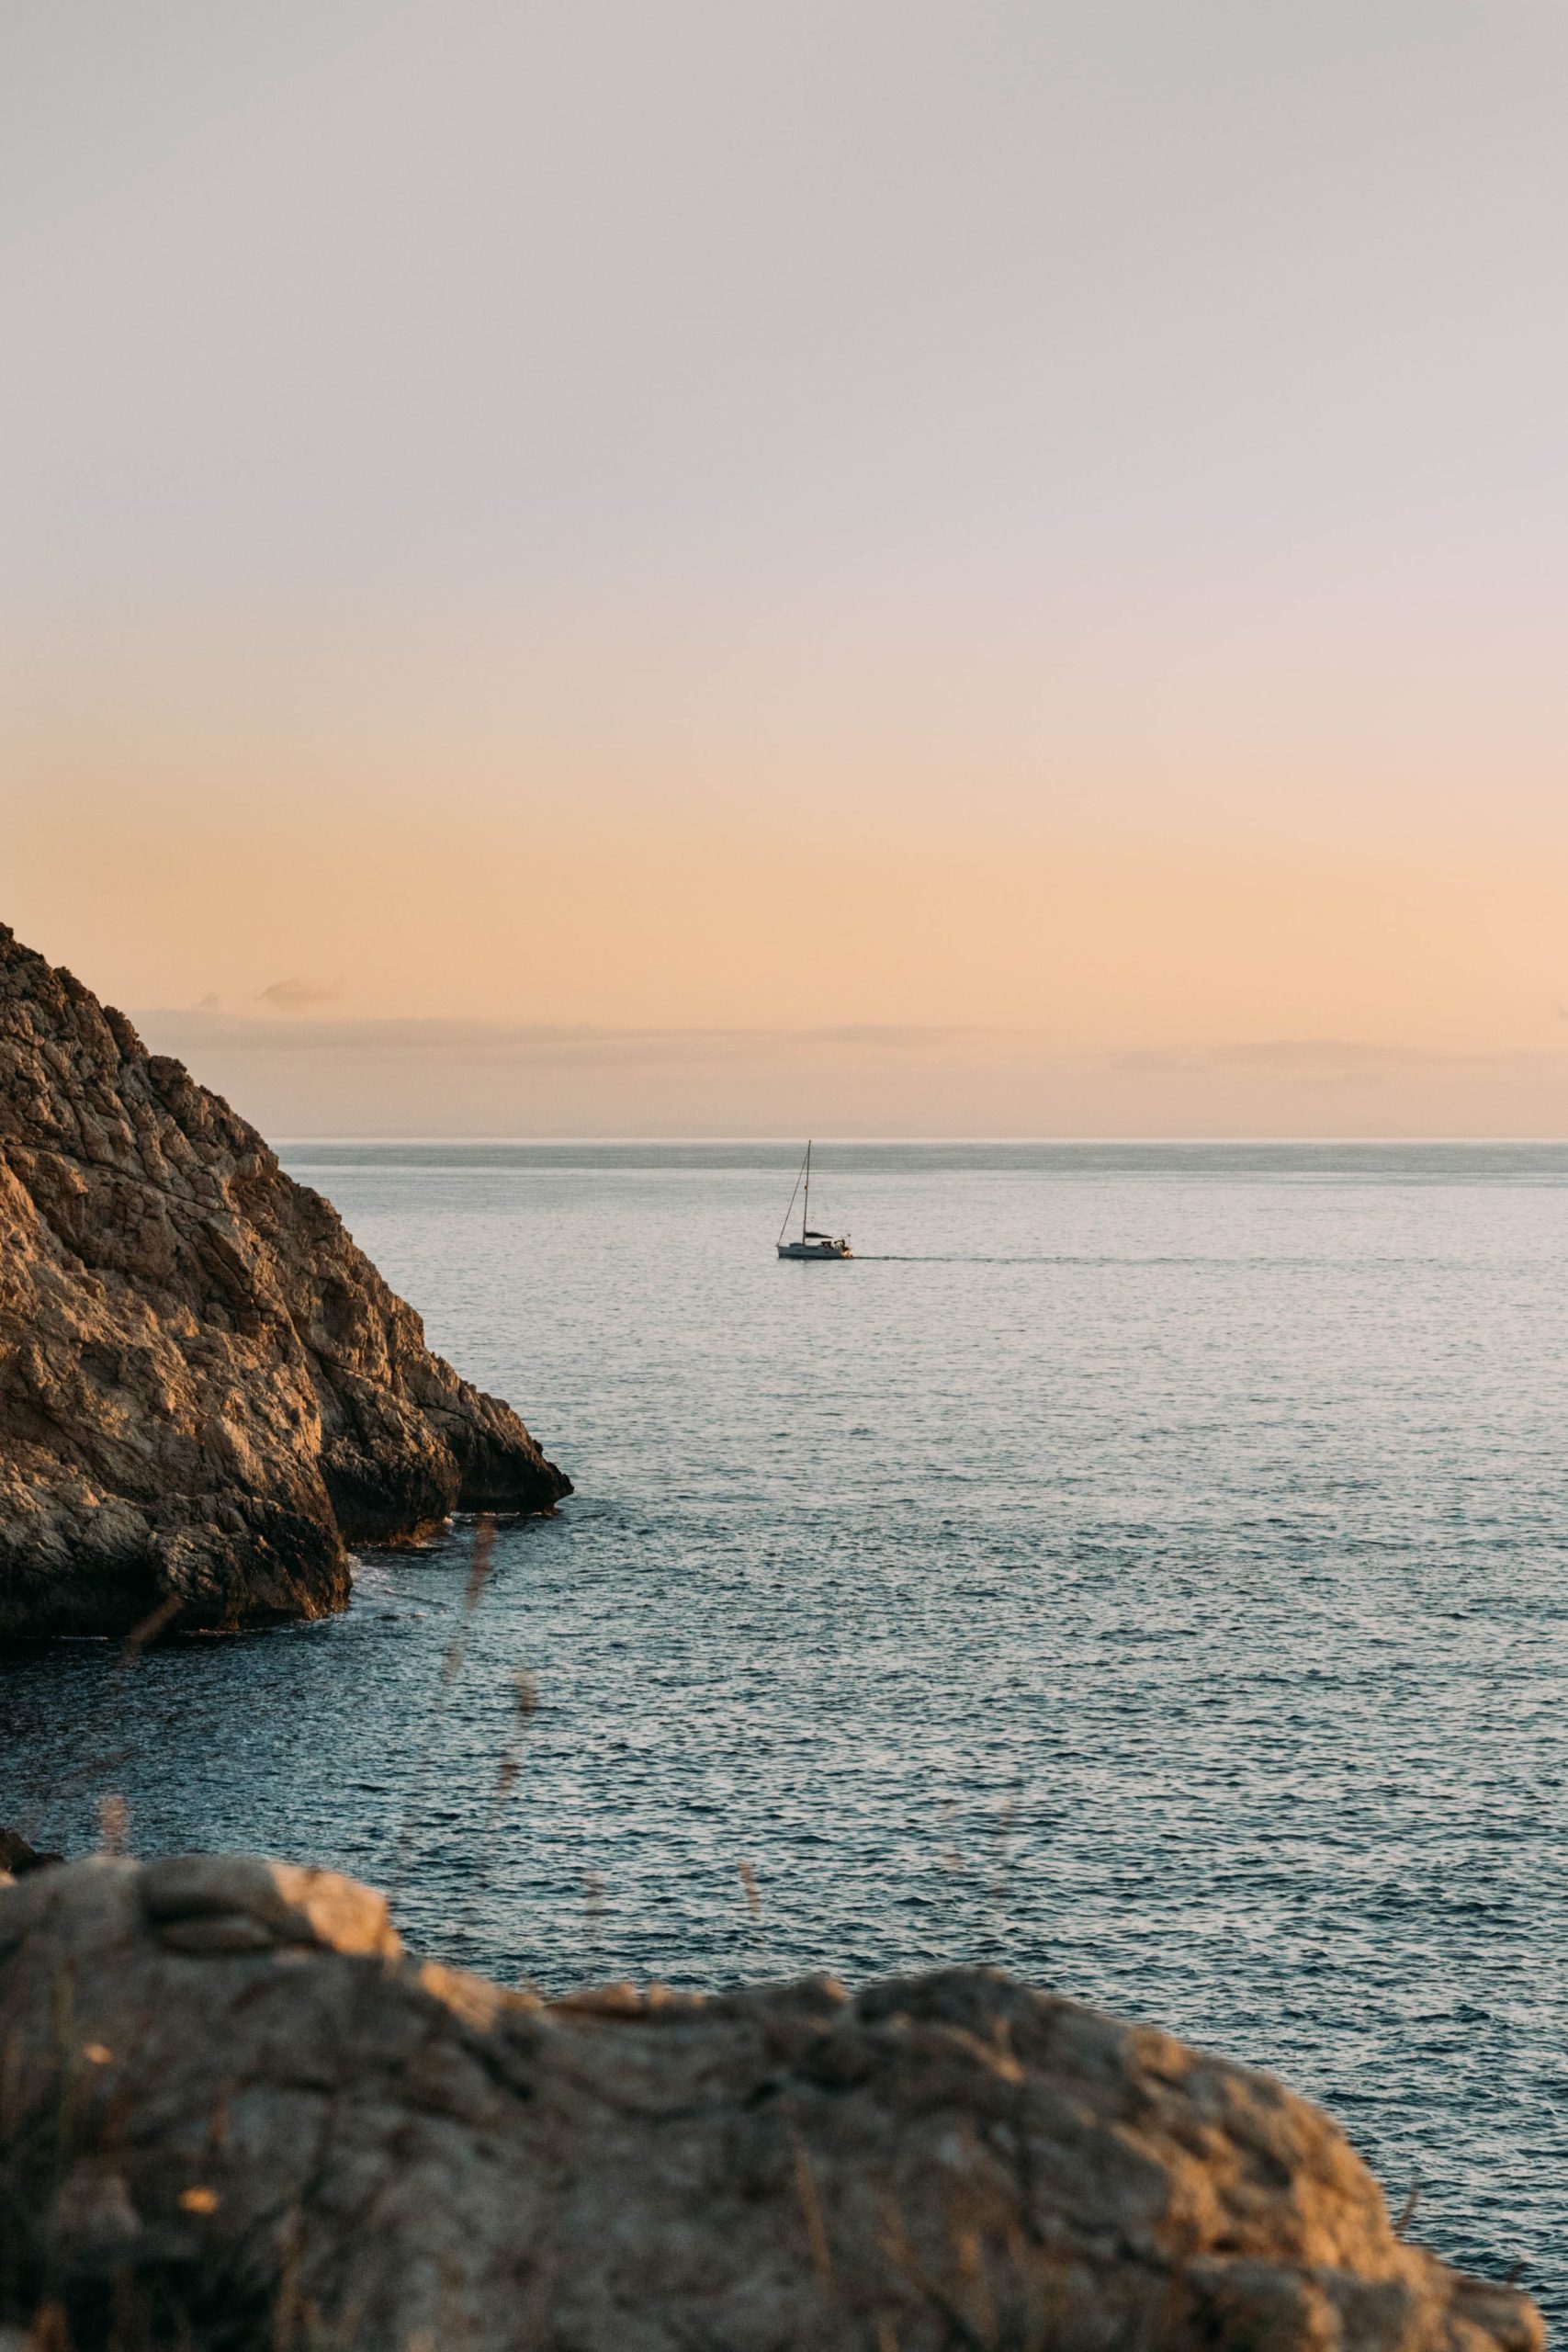 Alquiler de barco en Mallorca para unas vacaciones inolvidables